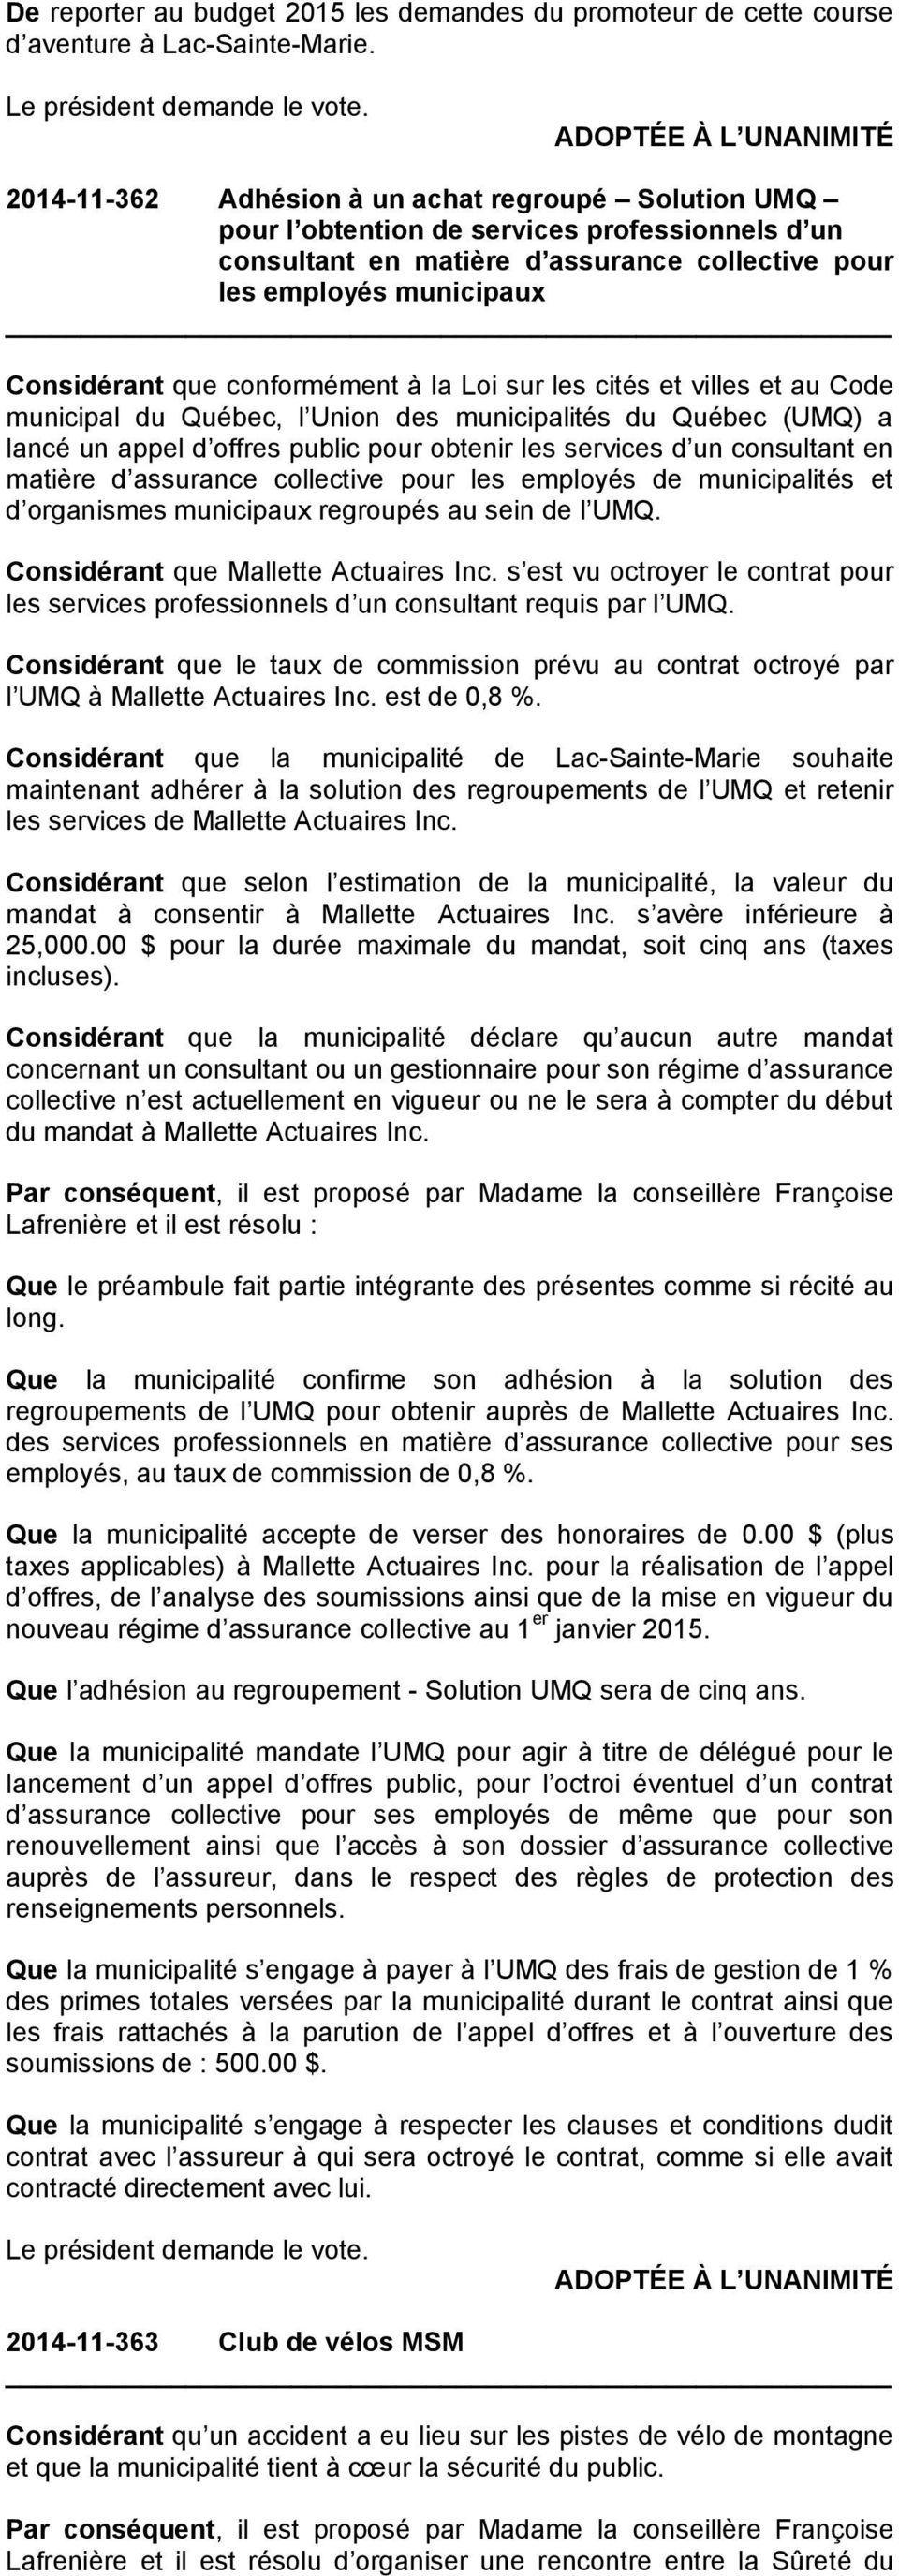 conformément à la Loi sur les cités et villes et au Code municipal du Québec, l Union des municipalités du Québec (UMQ) a lancé un appel d offres public pour obtenir les services d un consultant en